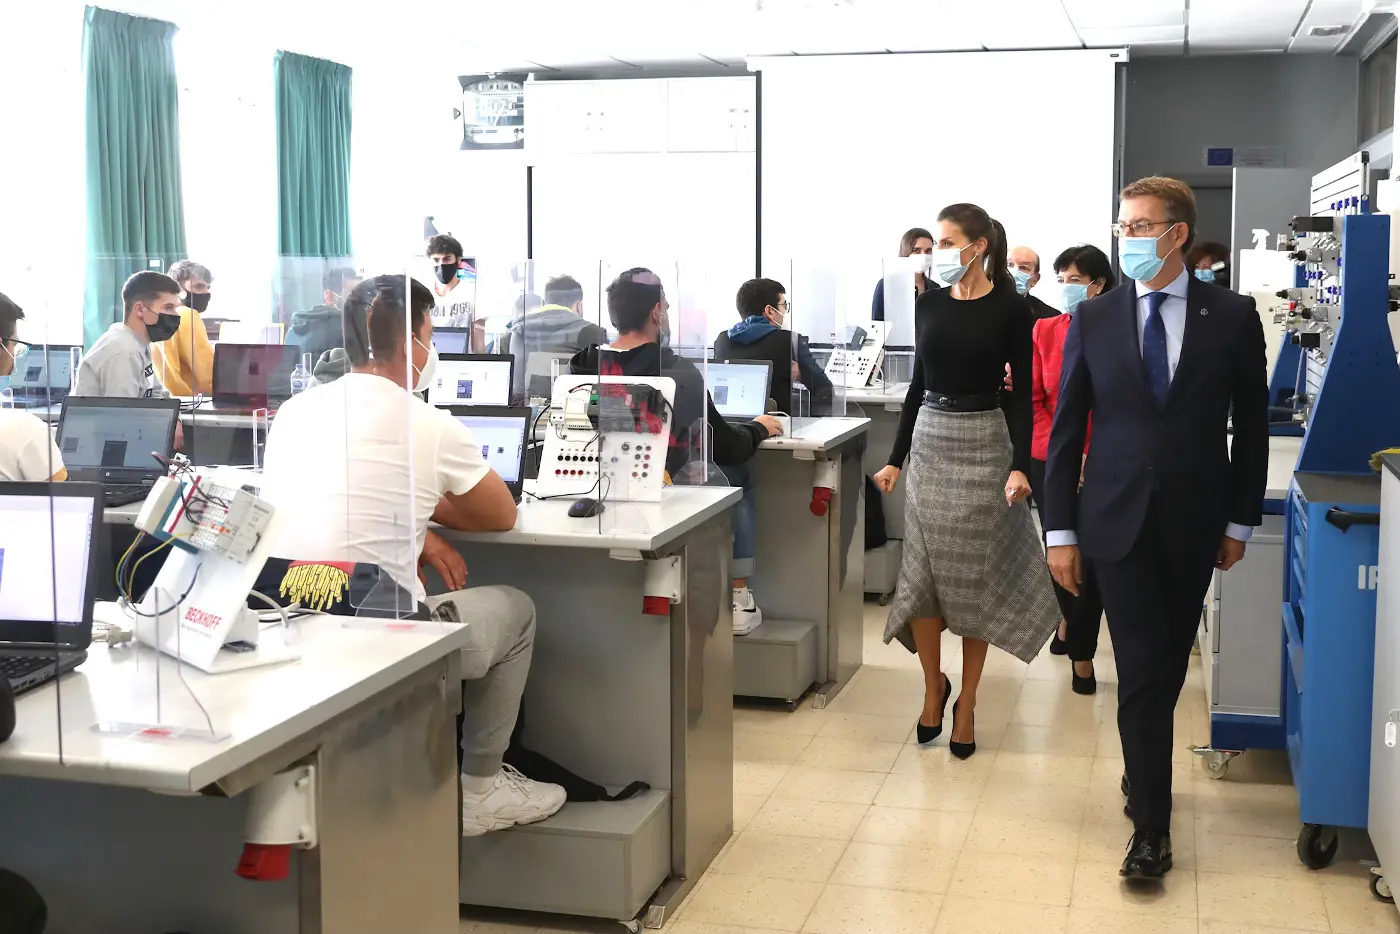 Queen Letizia toured the vocational course center